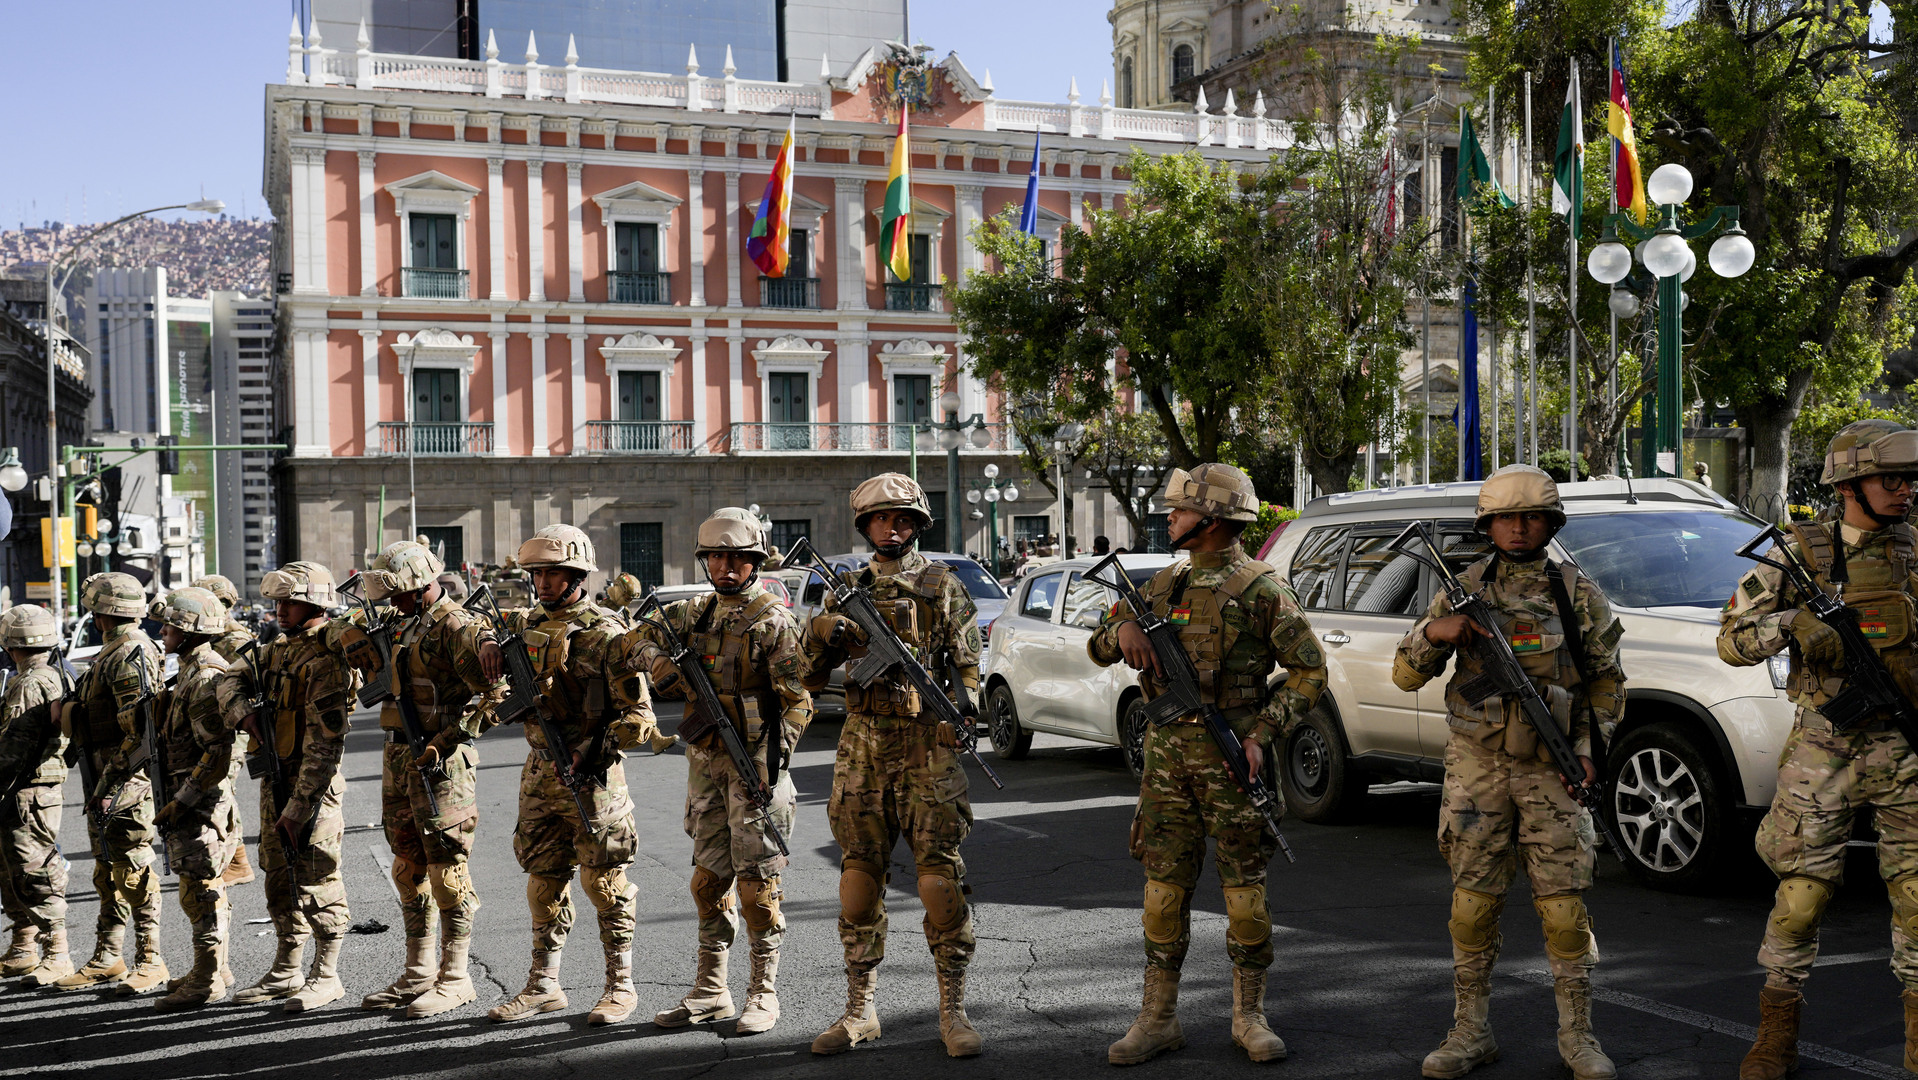 انتشار العسكريين أمام القصر الرئاسي بعاصمة بوليفيا لاباز يوم الأربعاء 26 يونيو